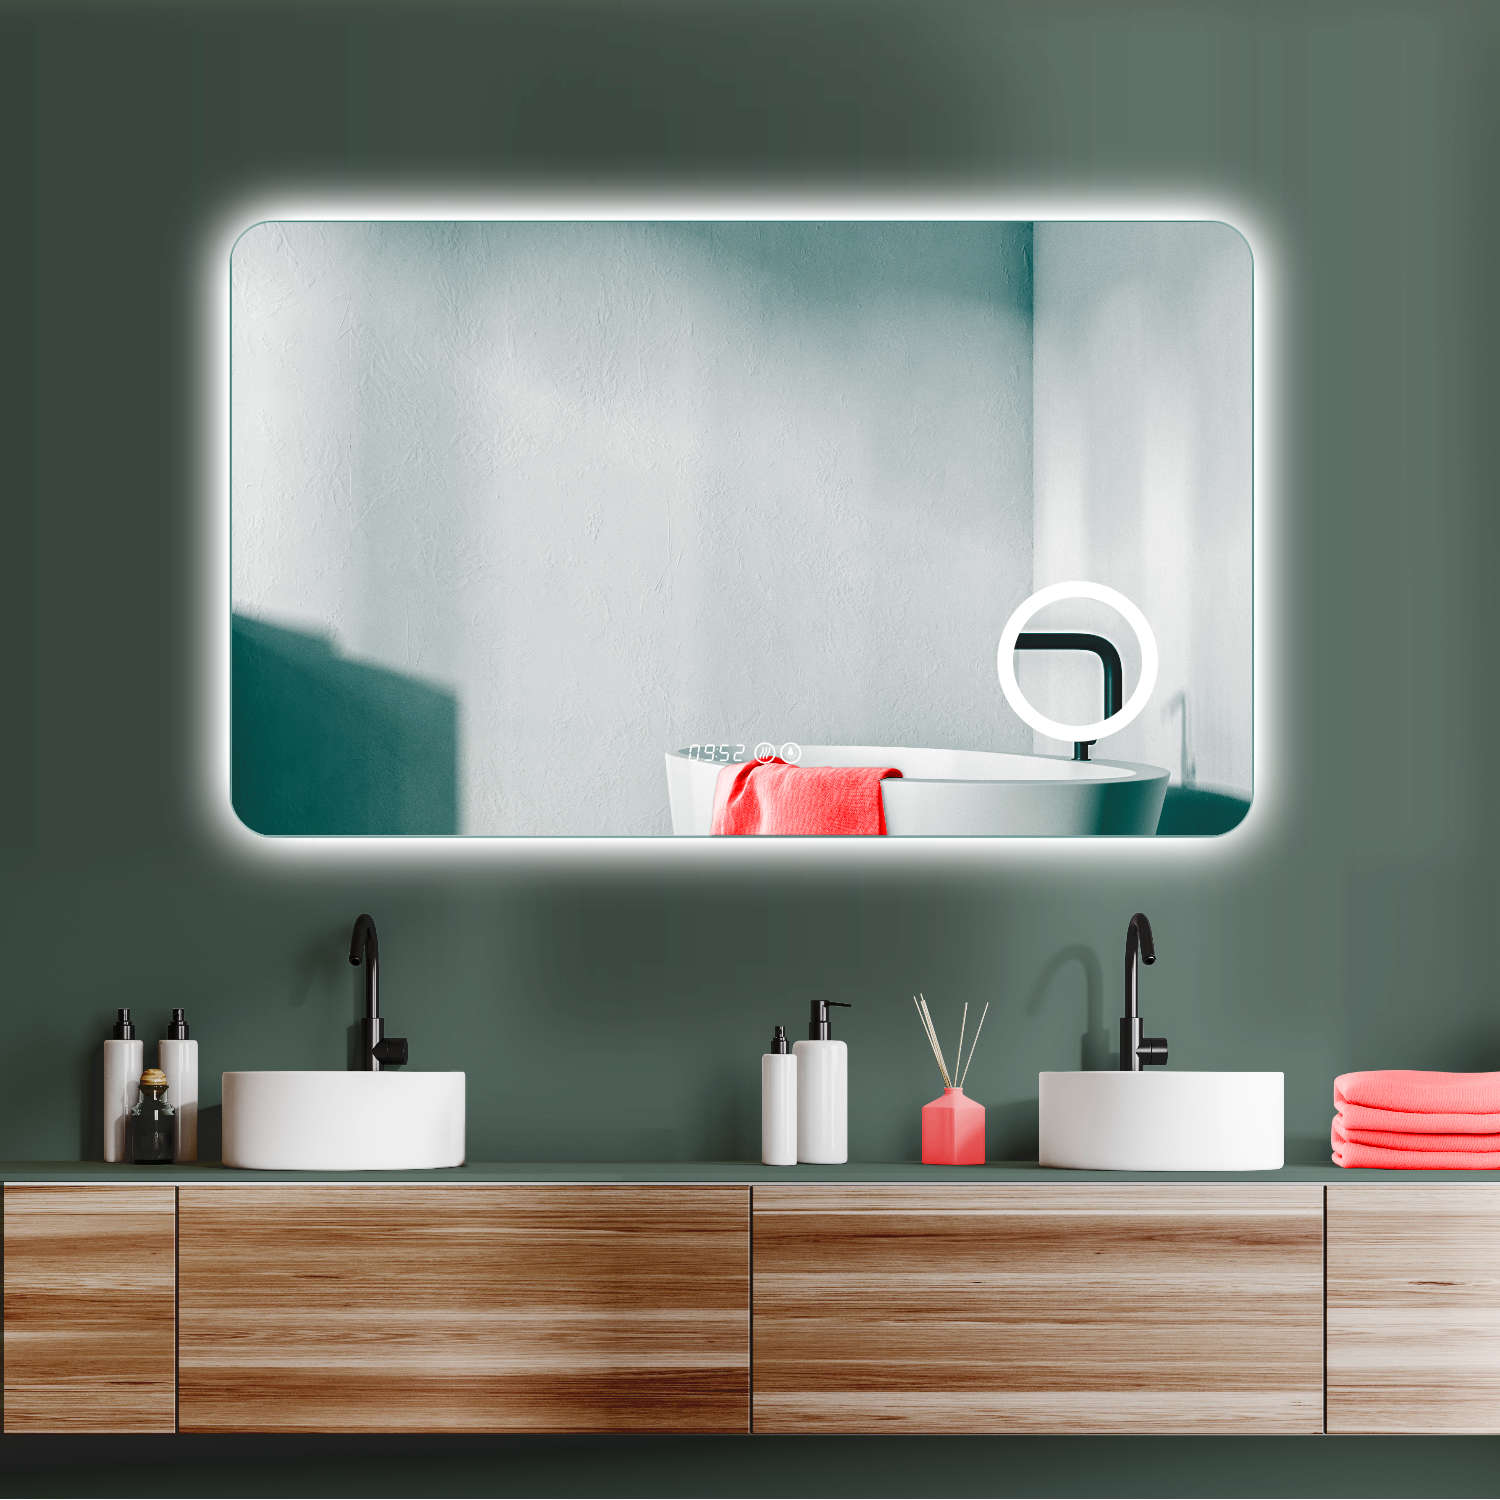 ANTIBESCHLAG LED Badspiegel + Uhr + Lichtwechsel Kaltweiß Warmweiß